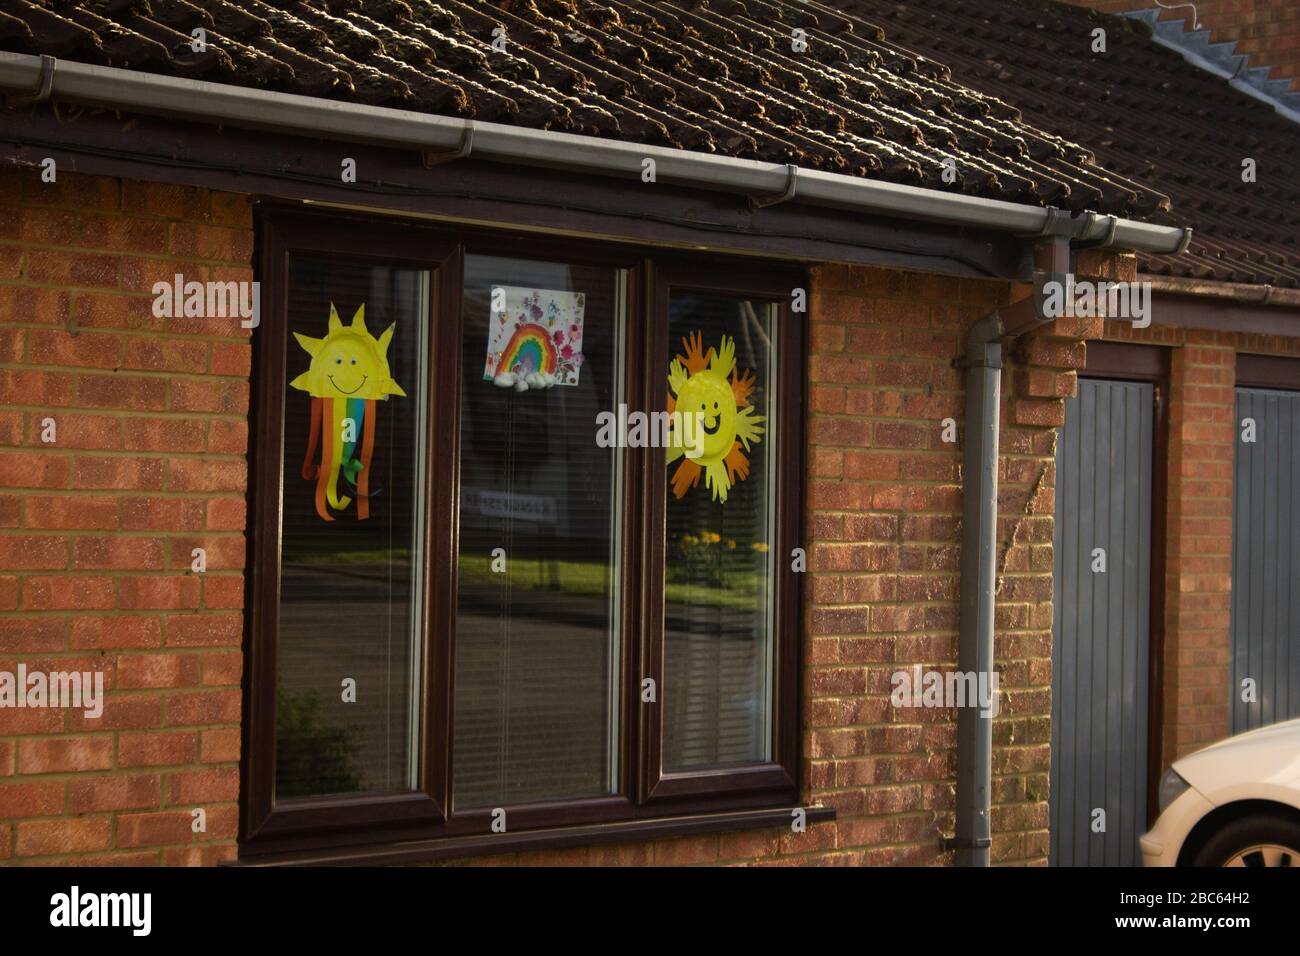 Arco iris infantil en ventanas populares durante el brote de coronavirus en Northampton, Reino Unido. Jueves 2 de abril de 2020. Foto de stock